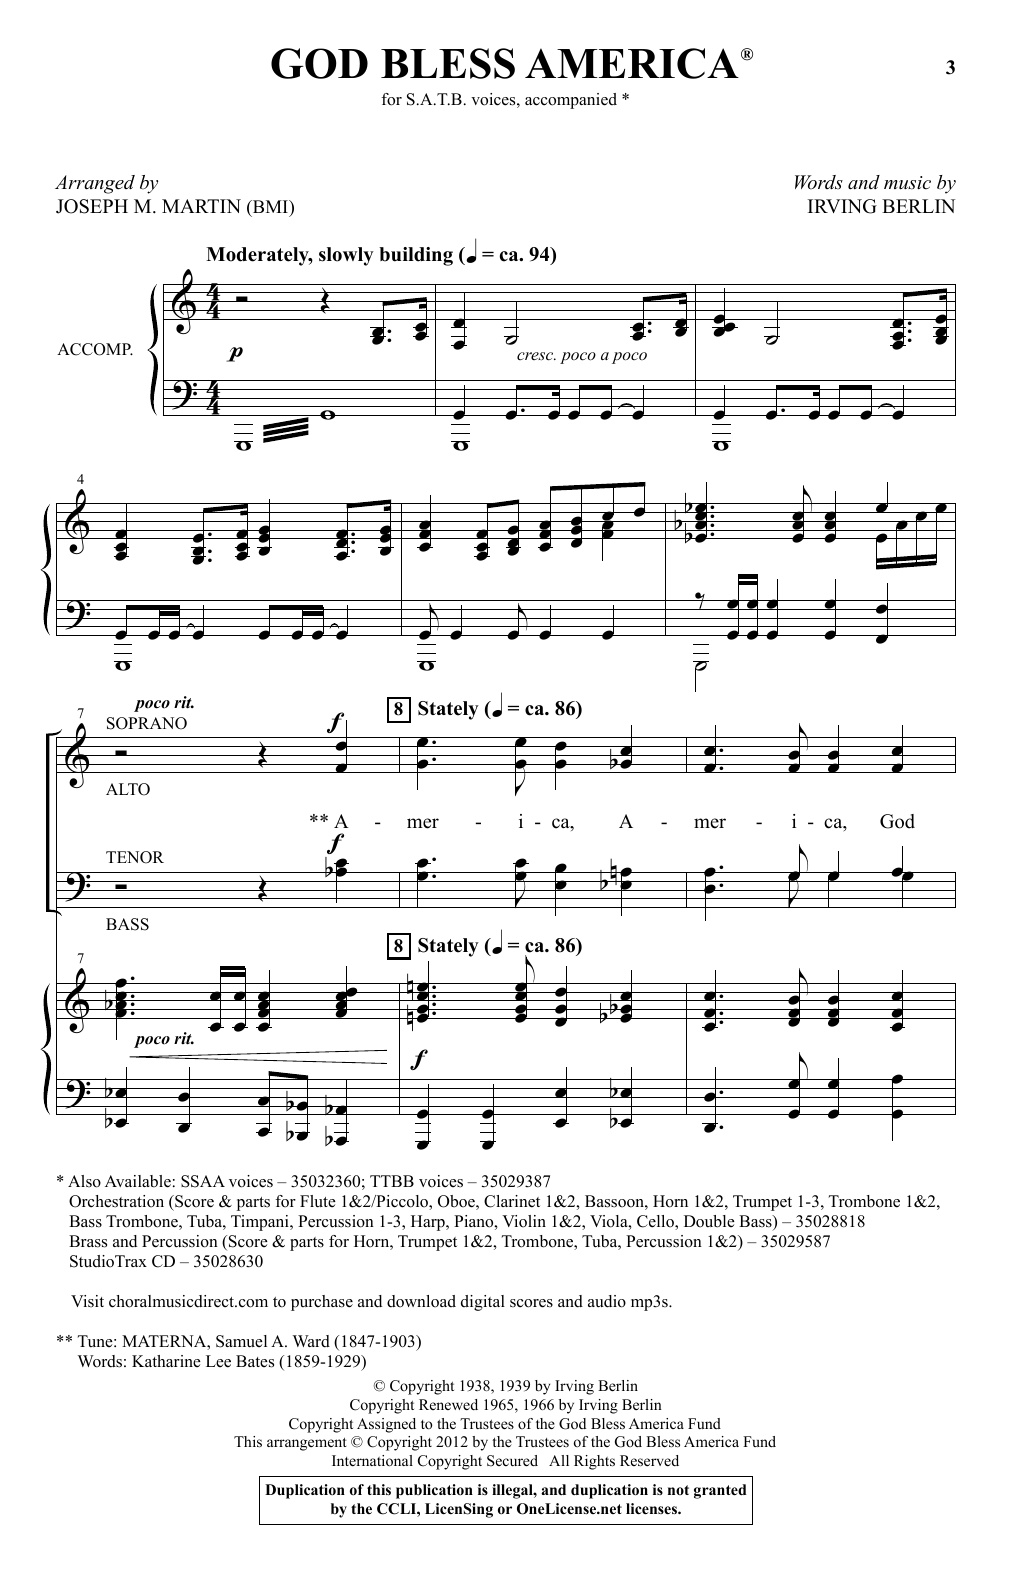 God Bless America arr Joseph M Martin Sheet Music Irving Berlin SATB Choir